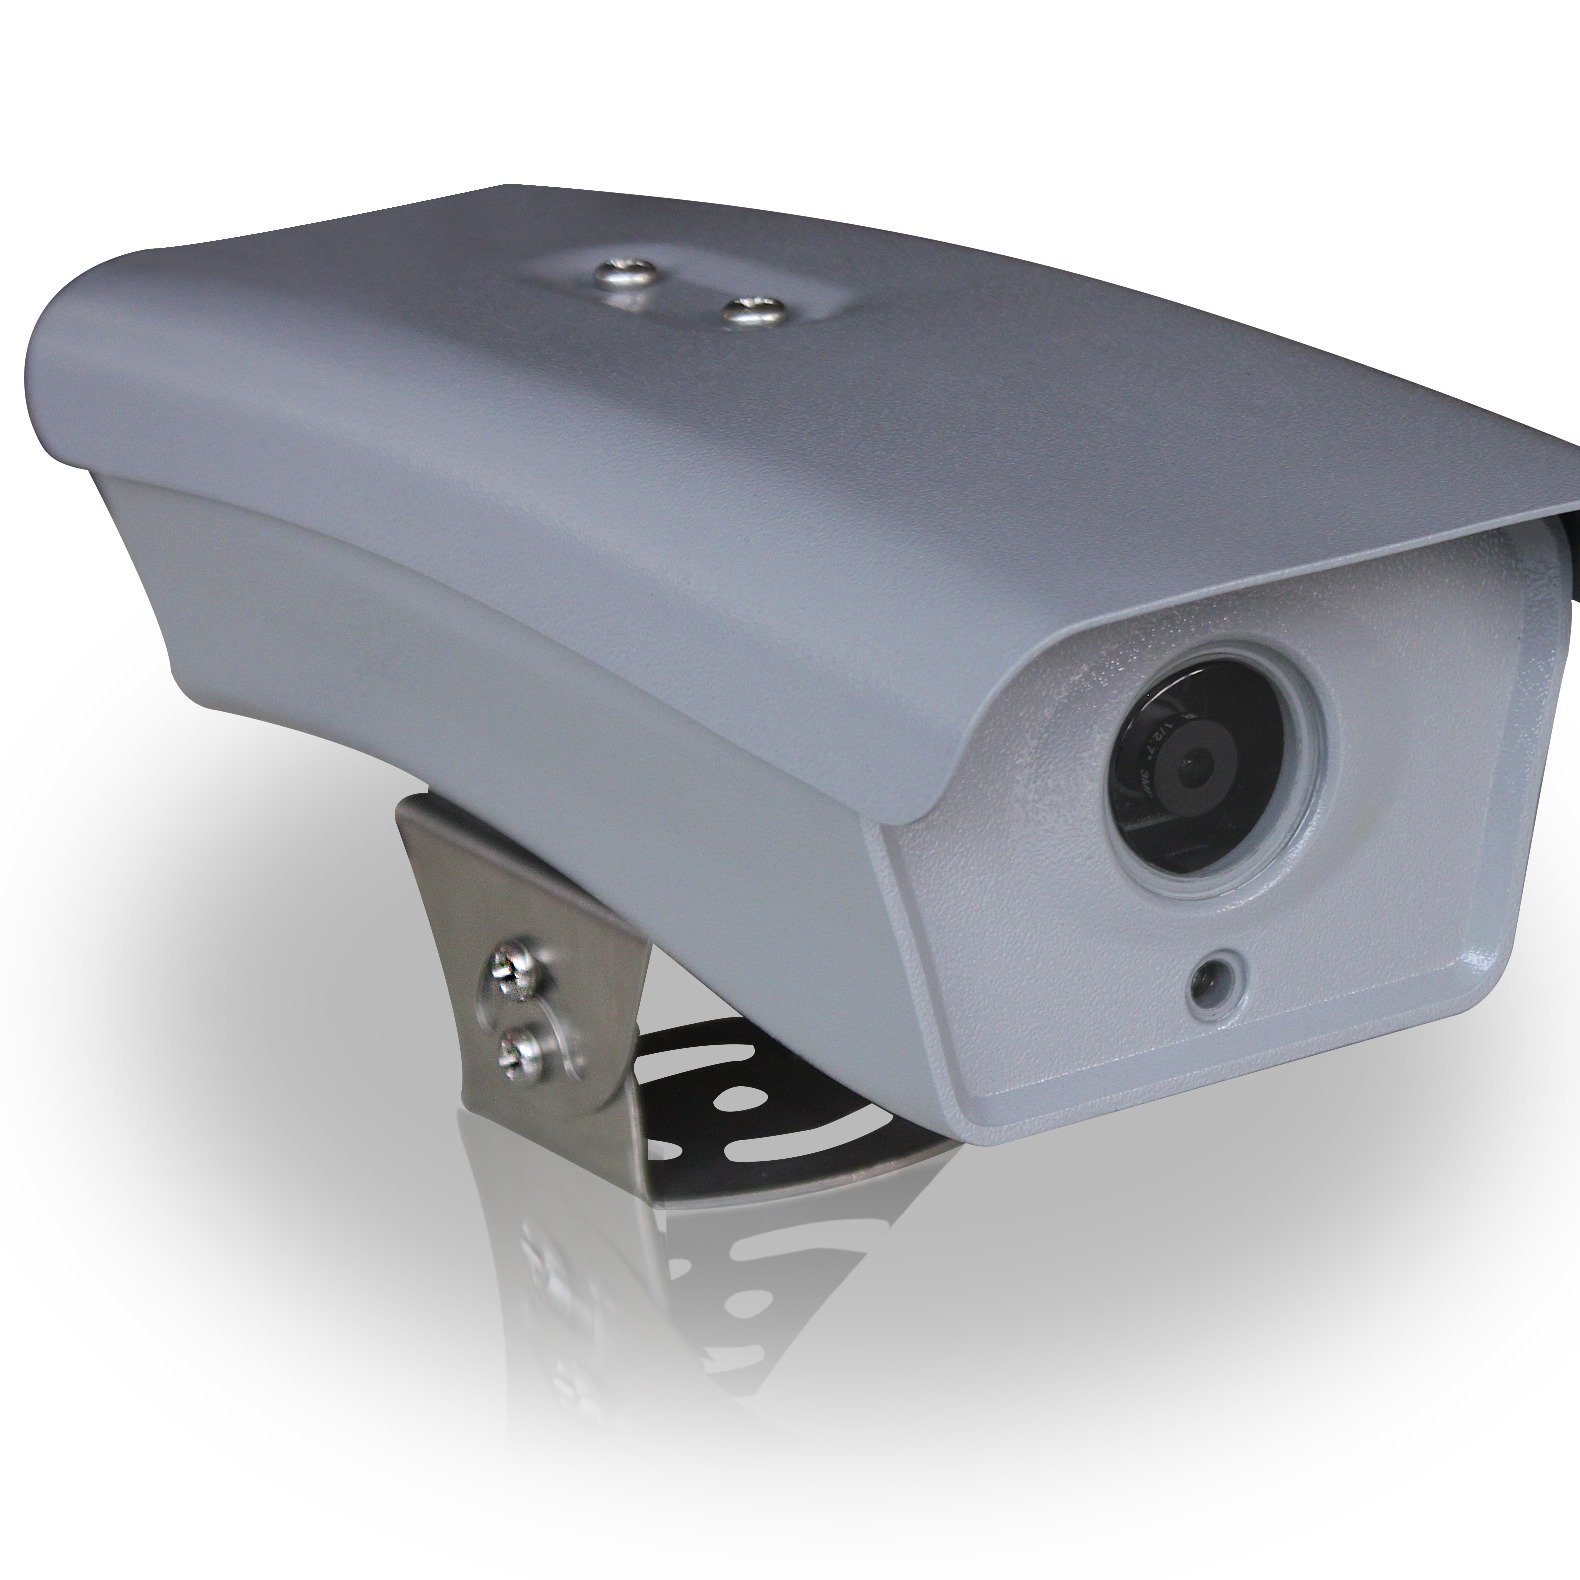 La detección de la cámara de video funciona con el semáforo de alto flujo.